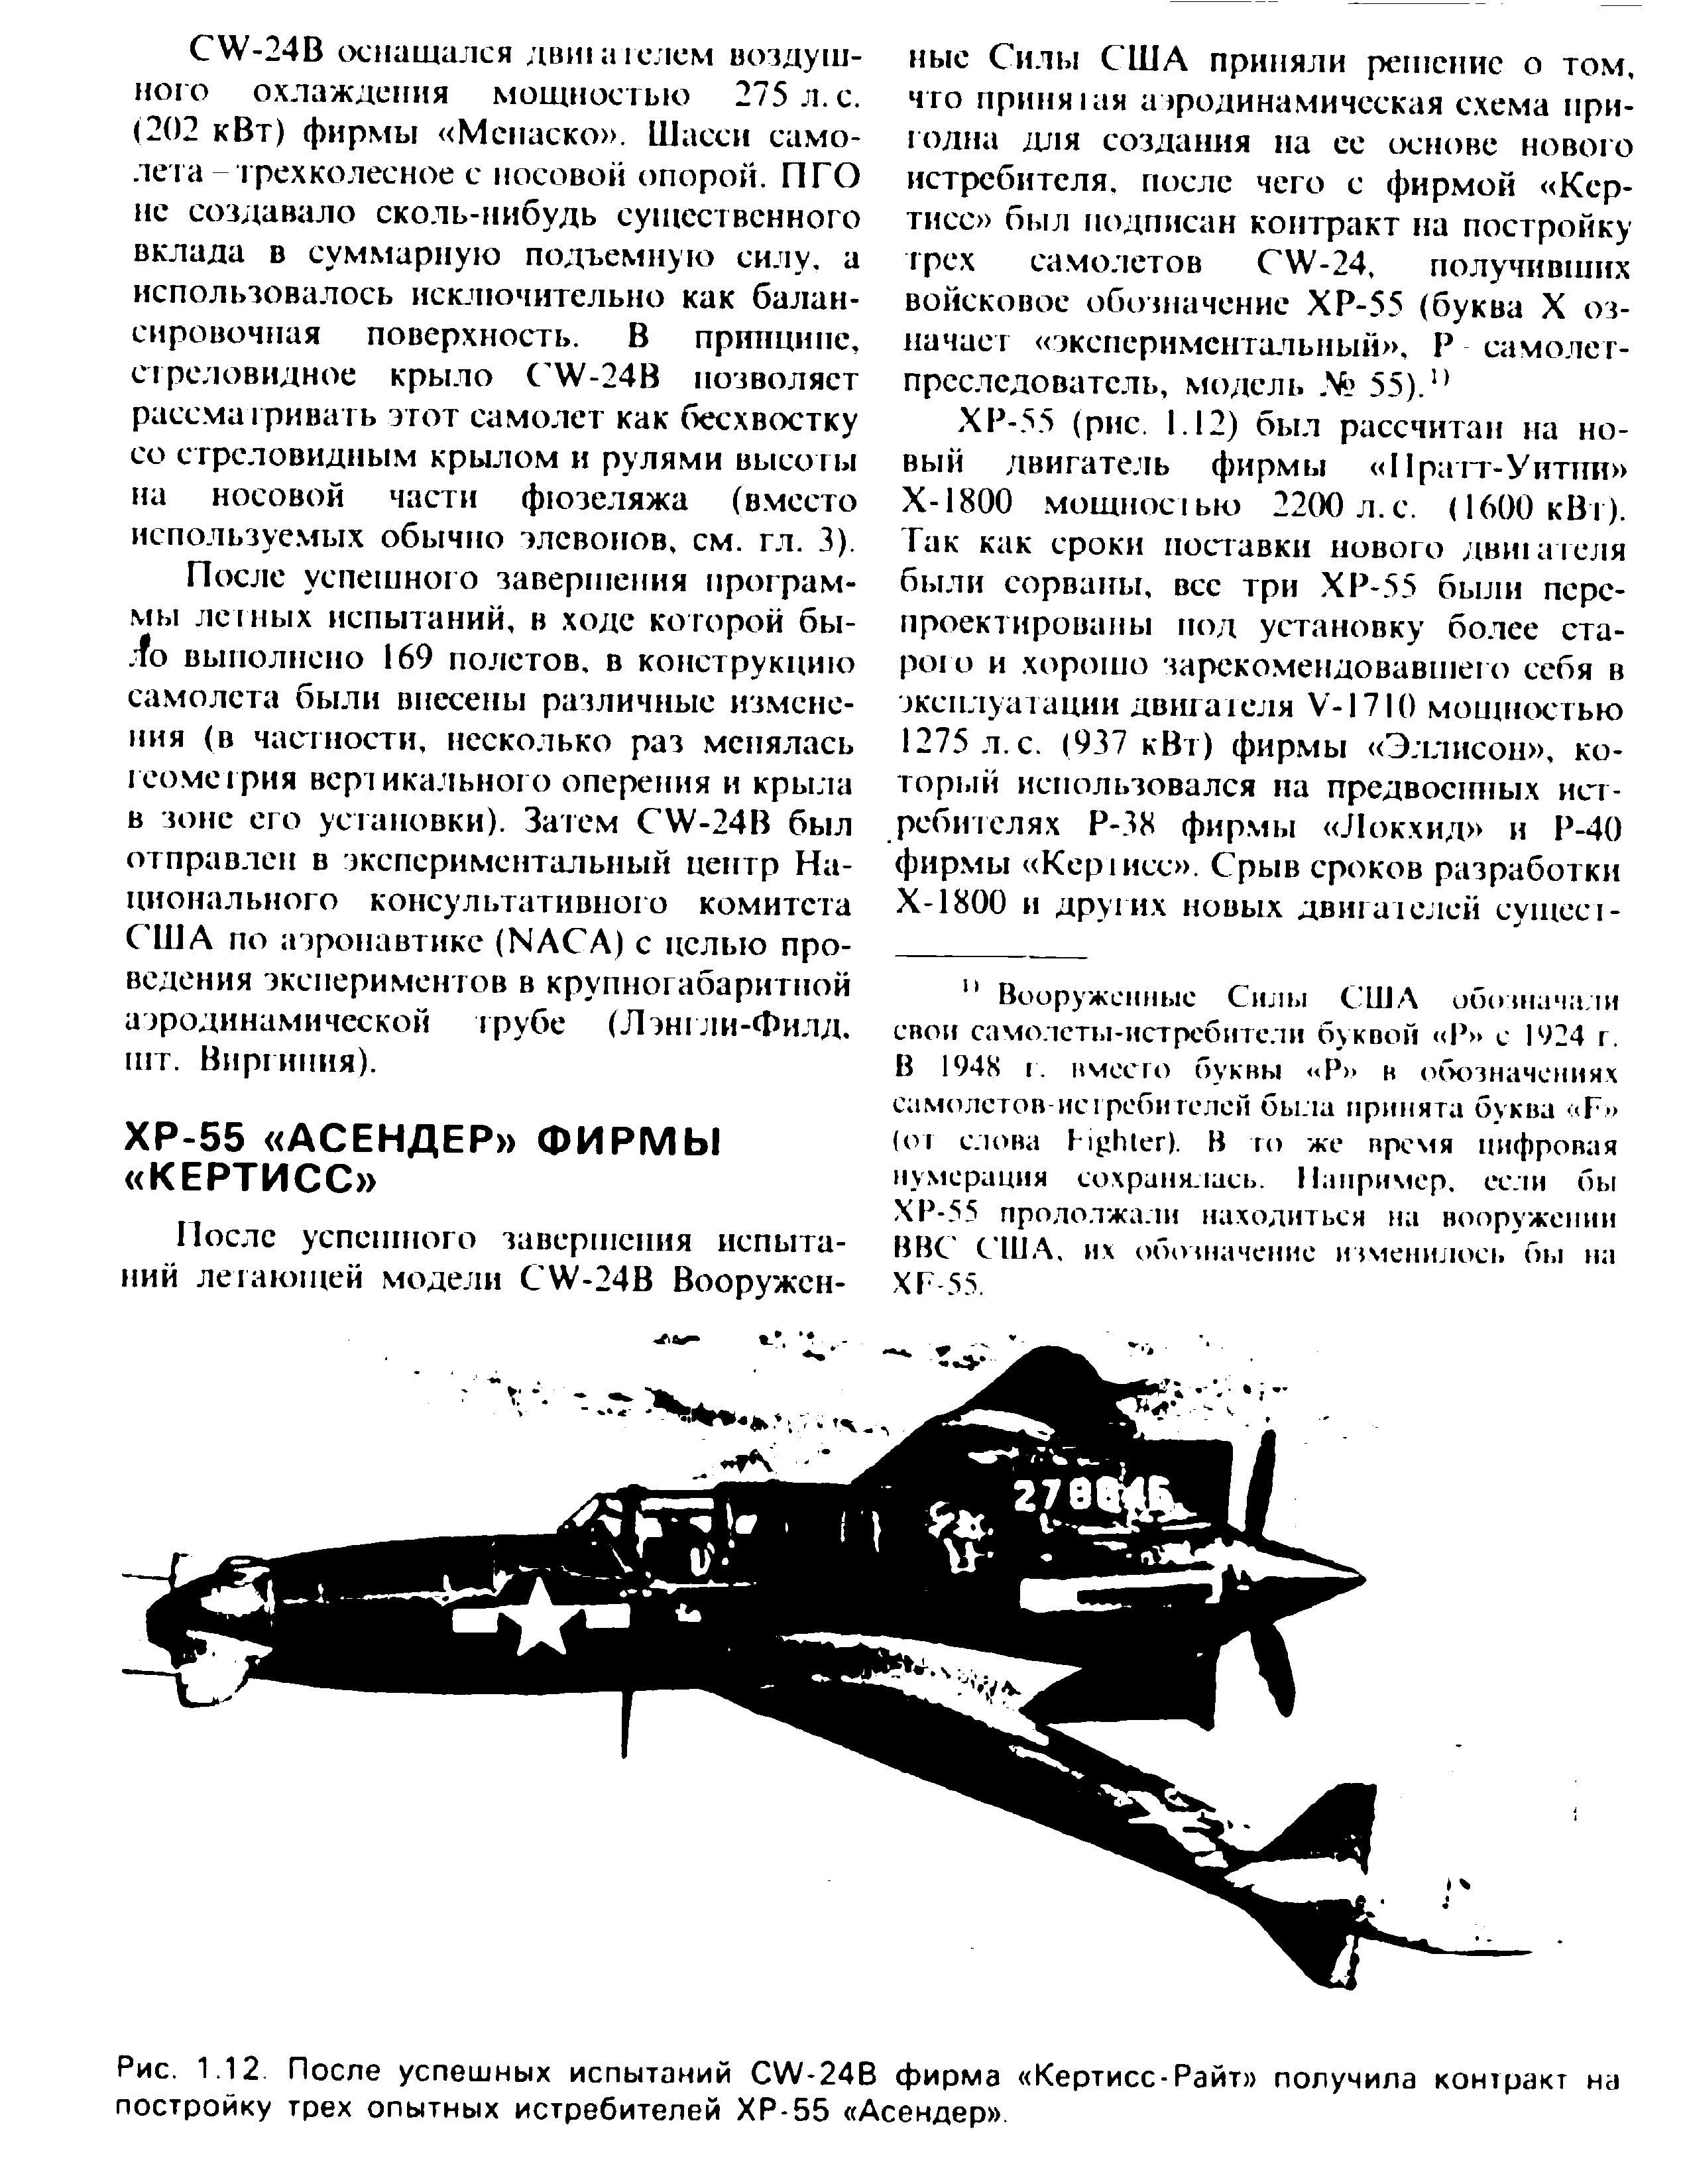 Рис. 1.12 После успешных испытаний С Л/-24В фирма Кертисс-Райт получила контракт на постройку трех опытных истребителей ХР-55 Асендер .
